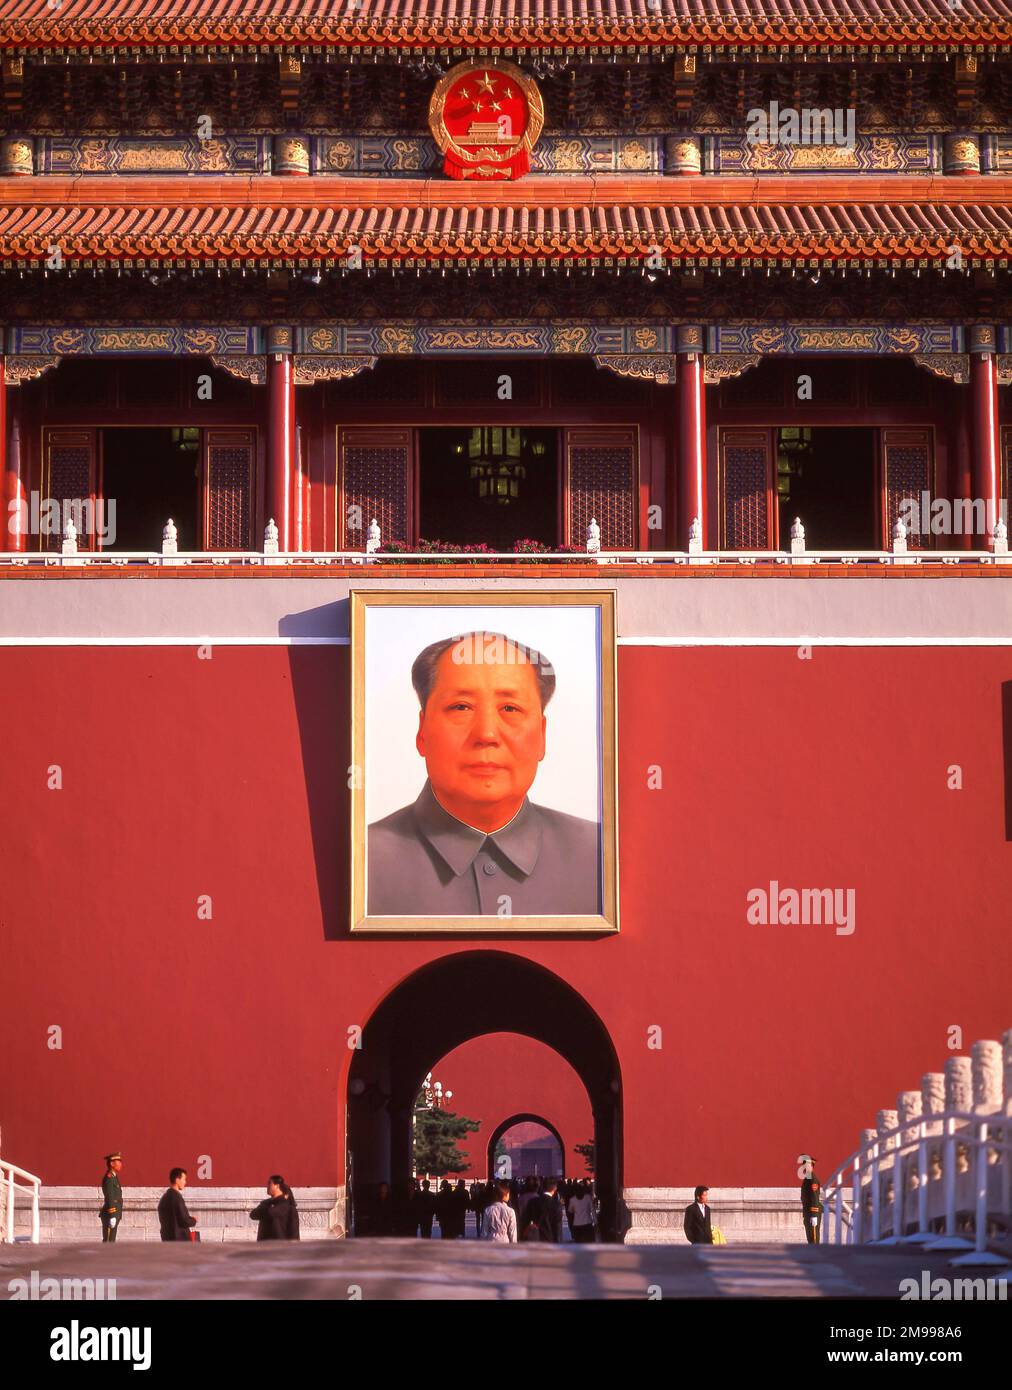 Ritratto del Presidente Mao, porta Tiananmen, Piazza Tiananmen, Dongcheng, Pechino, Pechino e Nord-est, la Repubblica popolare cinese Foto Stock